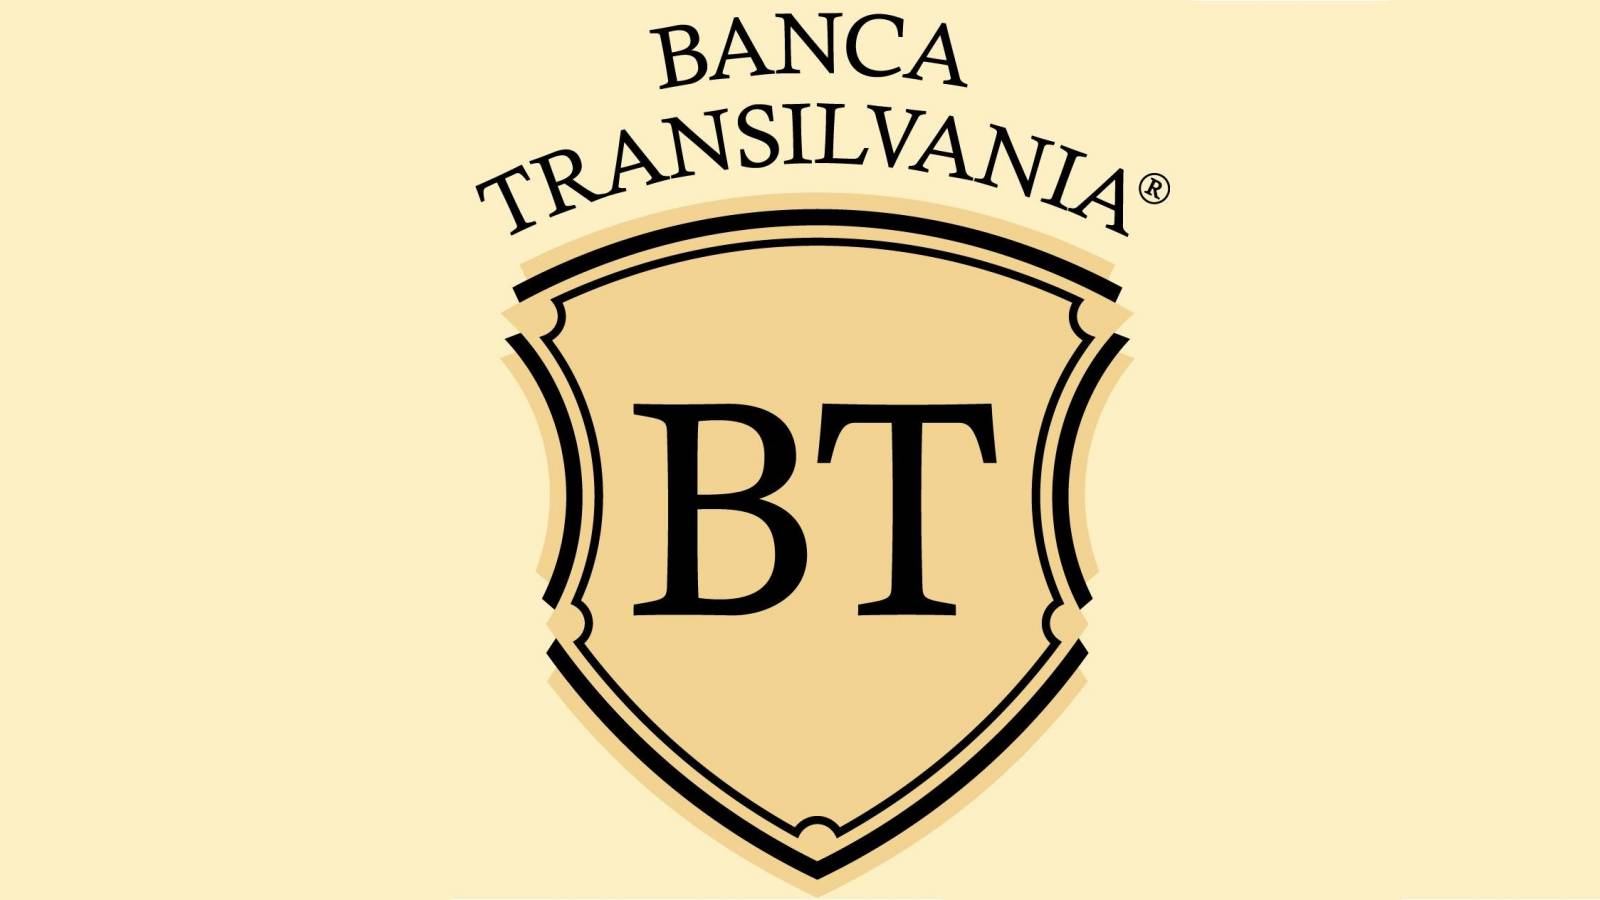 Informacje BANCA Transilvania Serioasa OSTRZEŻENIE Klienci rumuńscy